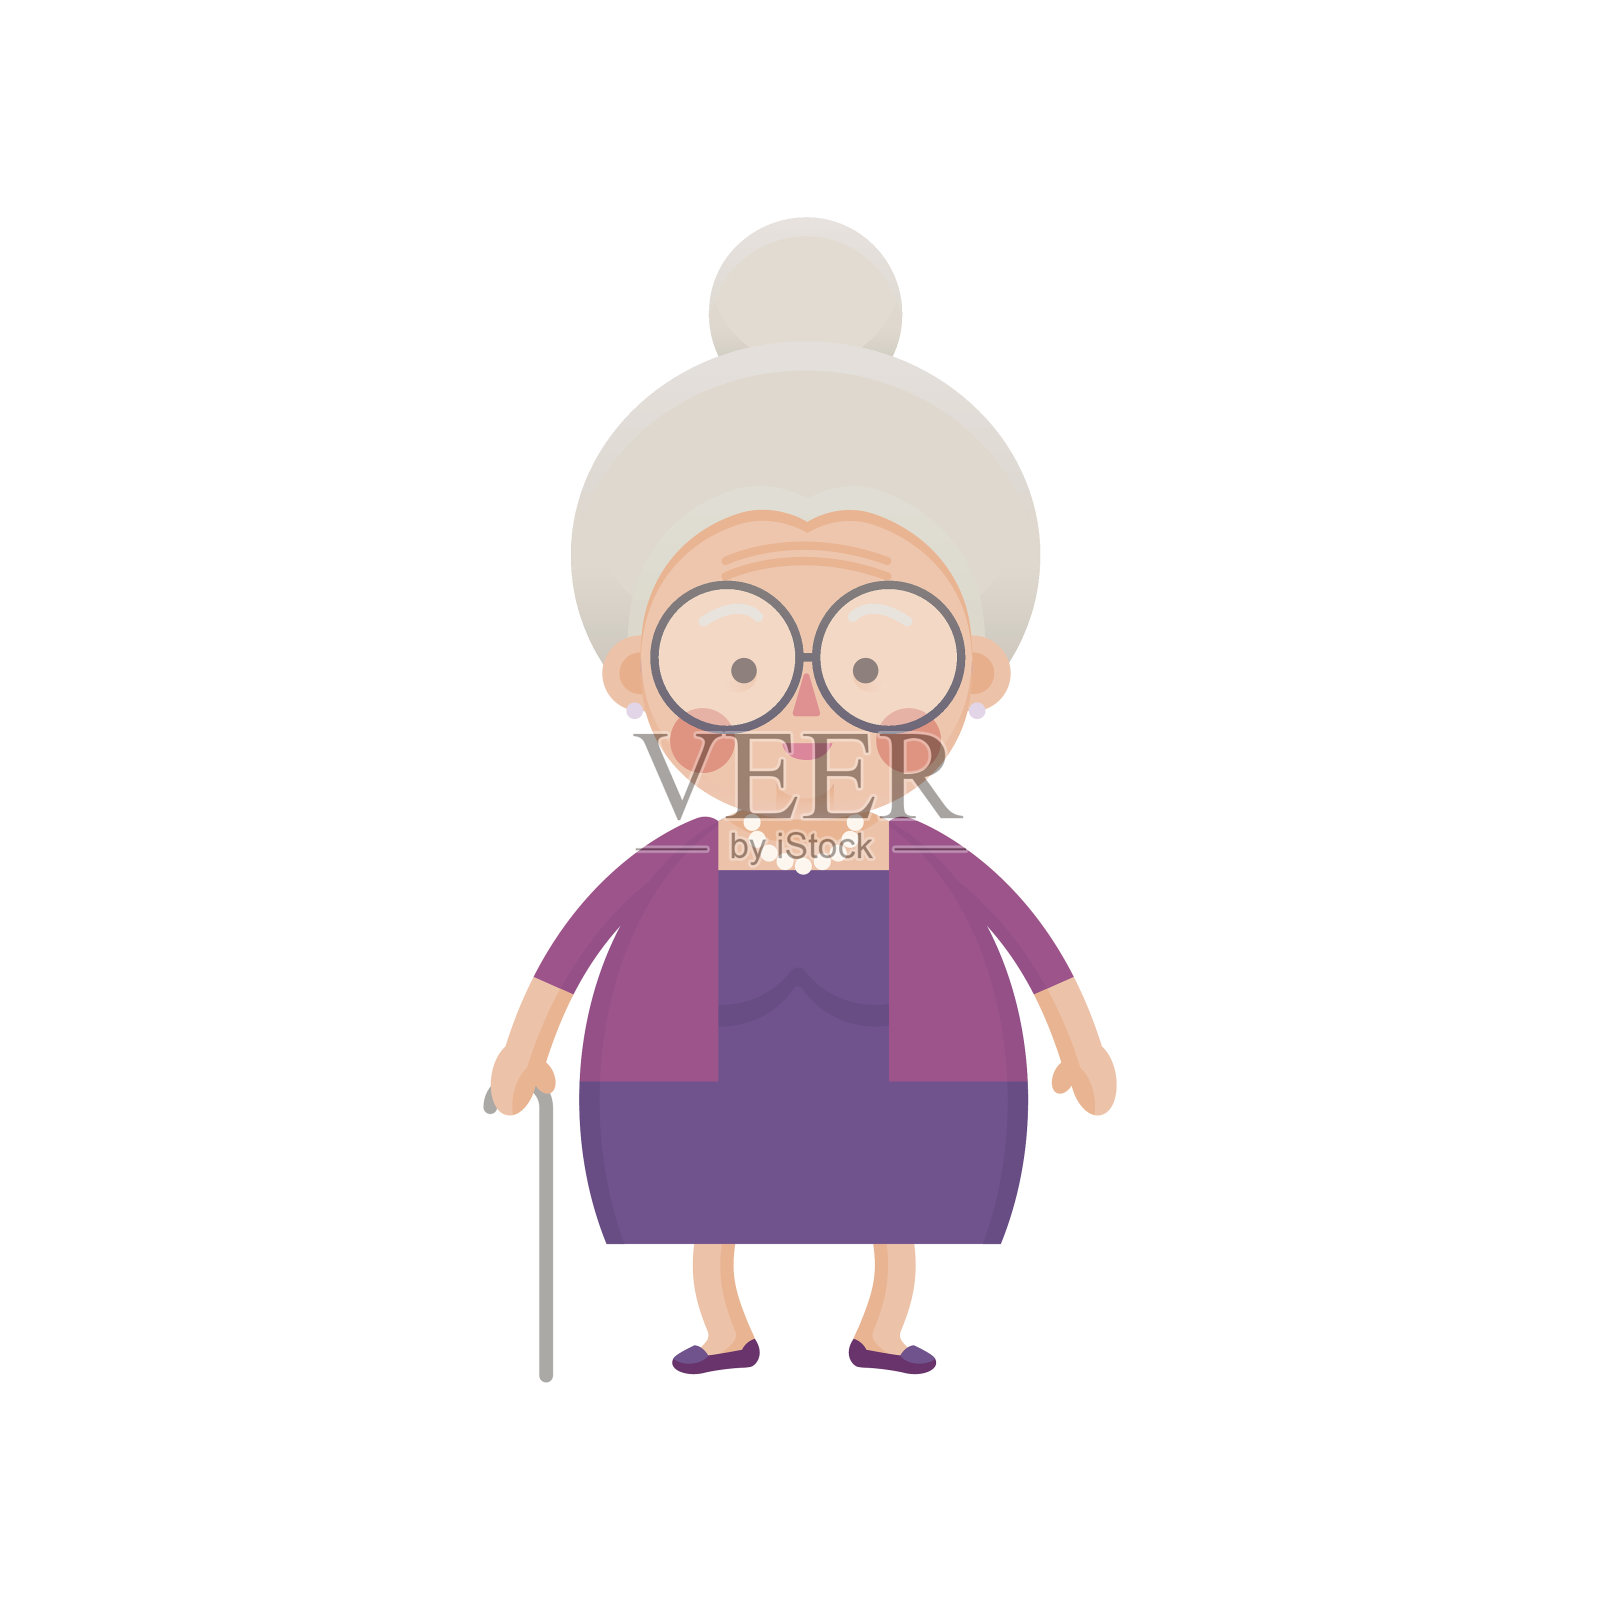 穿着紫色衣服、拄着拐杖的老太太设计元素图片